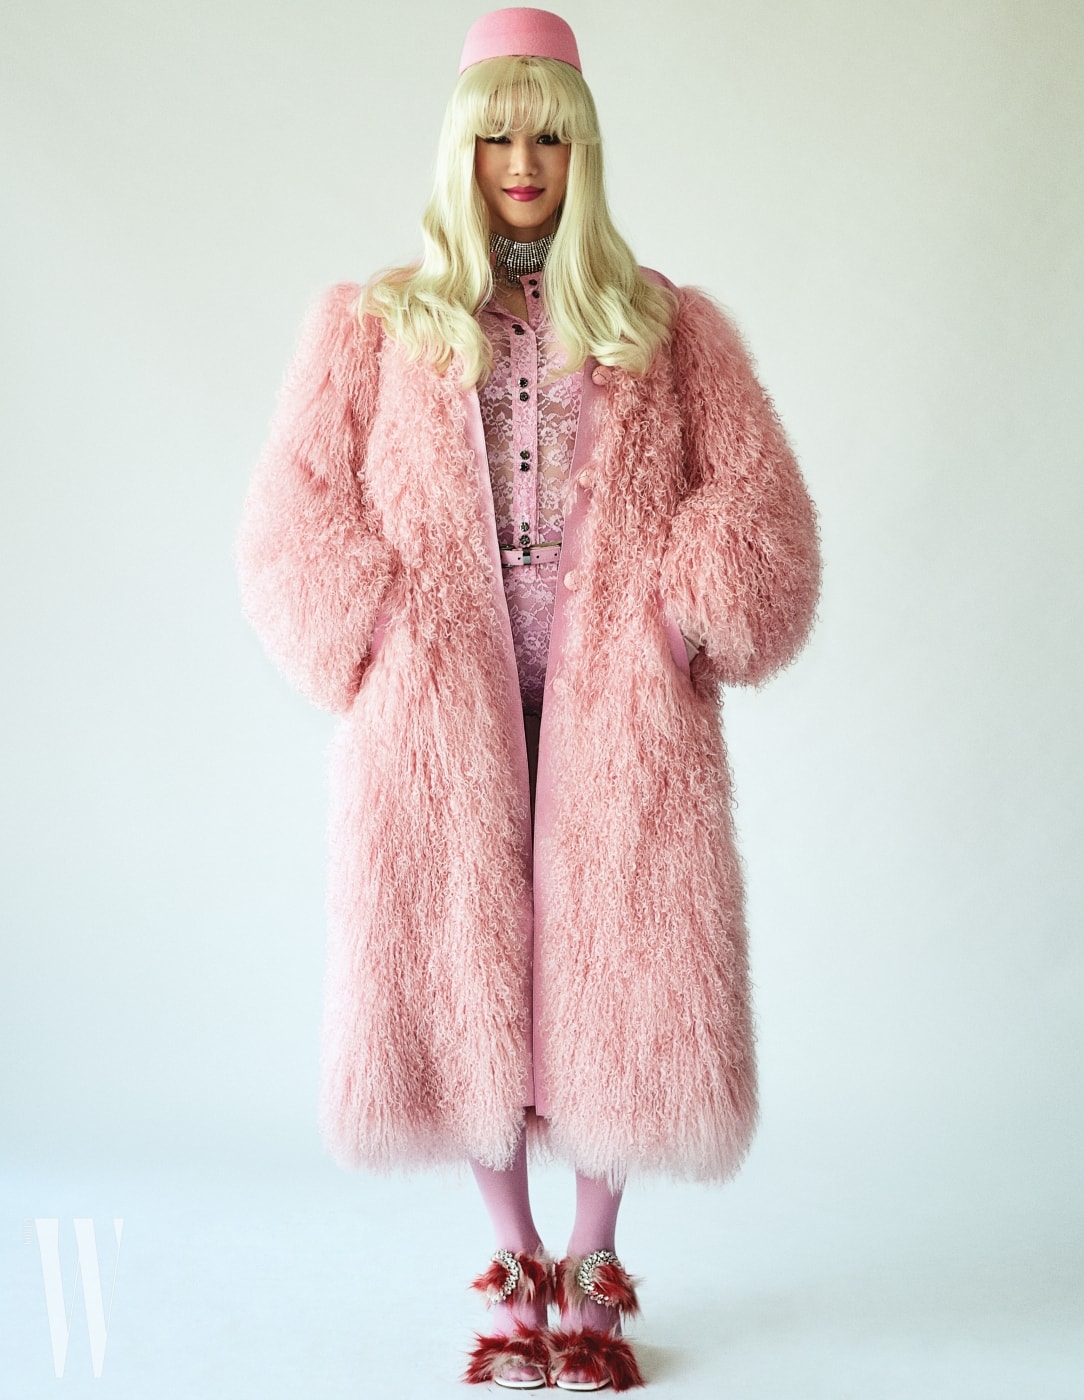 퍼포머 랑리가 입은 핑크색 퍼 코트, 안에 입은 레이스 보디슈트와 벨트는 Nina Ricci, 크리스털 초커는 Miu Miu, 퍼 장식 샌들은 Prada 제품. 핑크색 모자는 에디터 소장품.